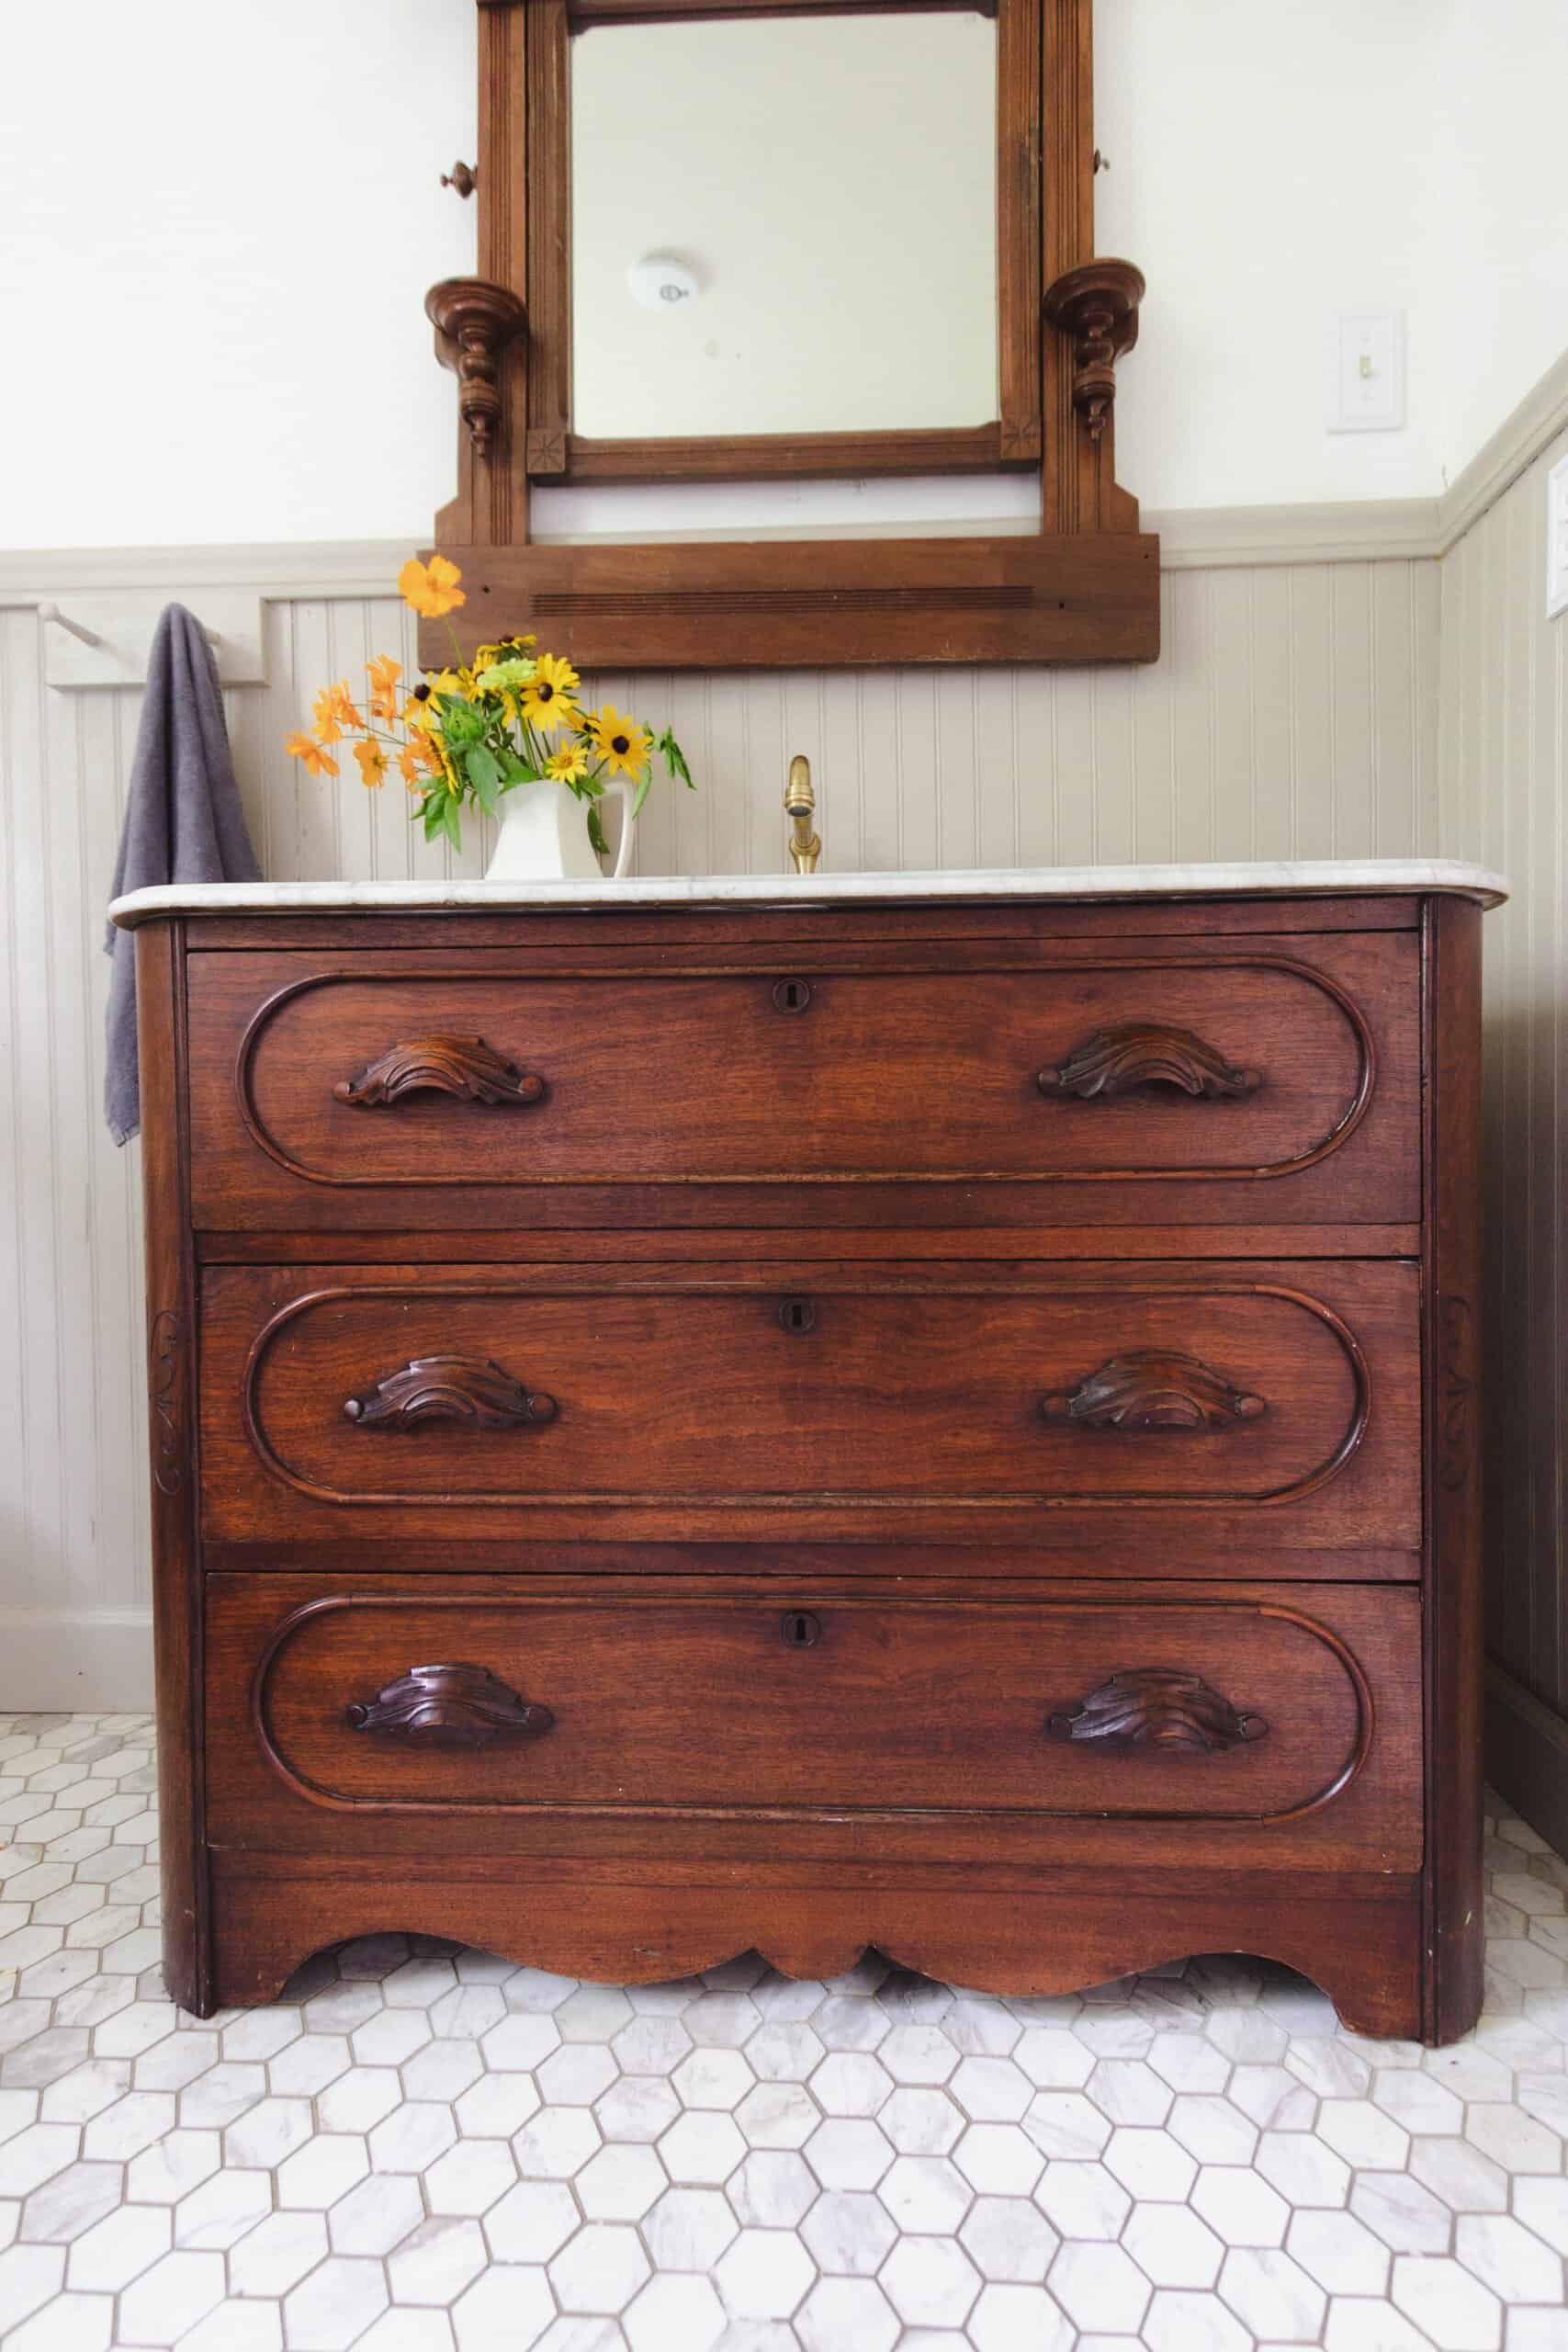 Antique Dresser Turned Into Vanity, Vessel Sink On Antique Dresser